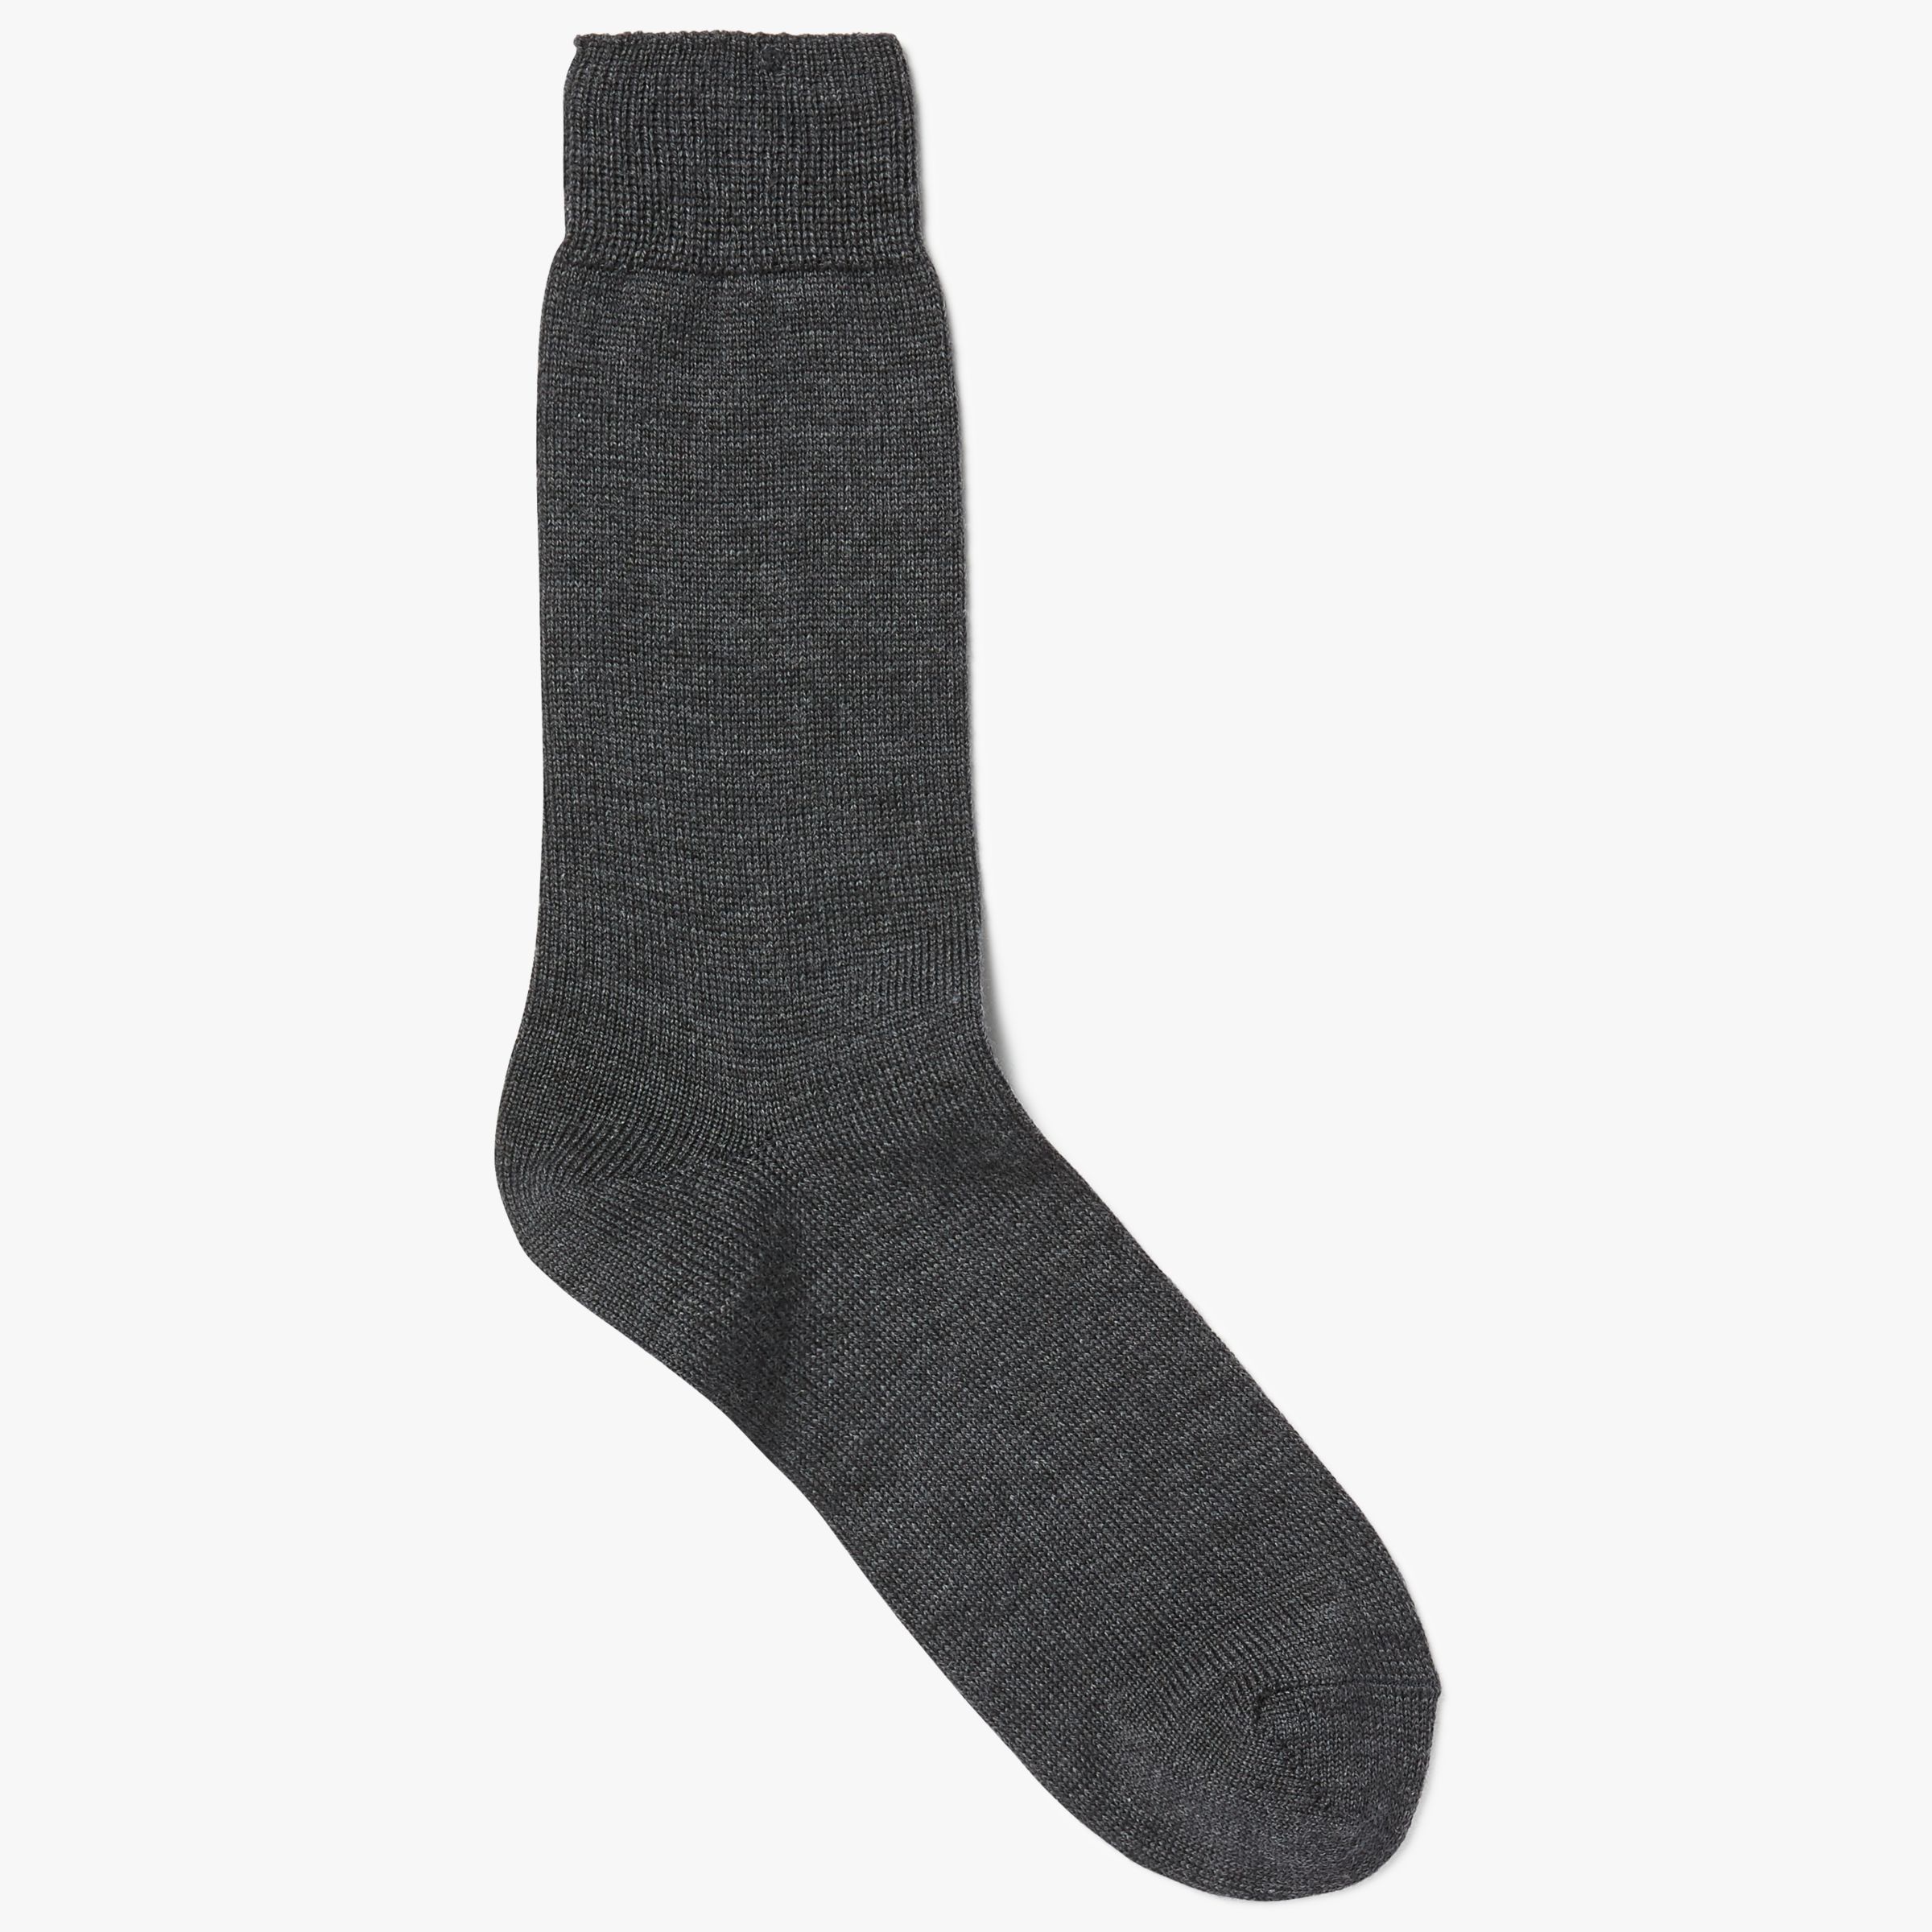 John Lewis & Partners Made in Italy Merino Blend Short Socks, Grey